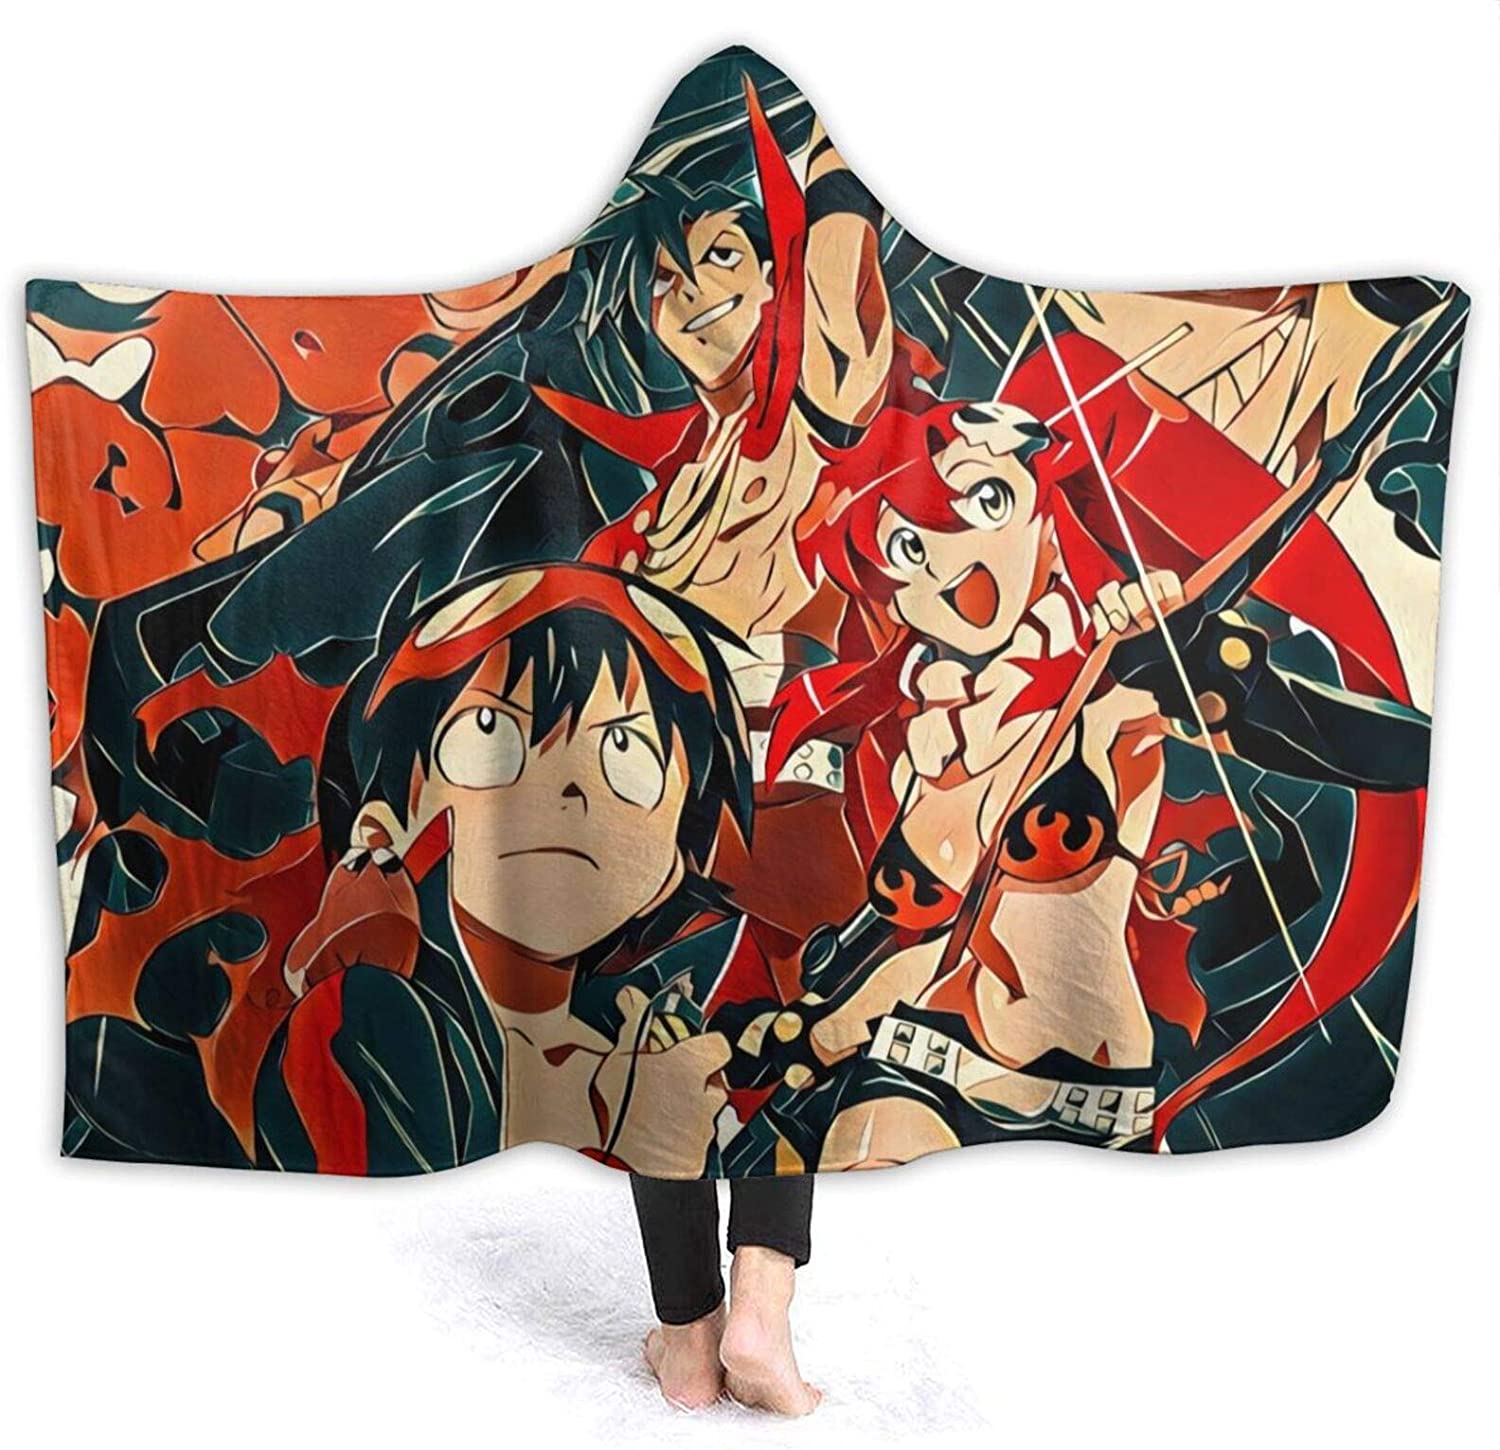 Anime Tengen Toppa Gurren Lagann Blanket - Nap Throw Printed Hooded Blanket